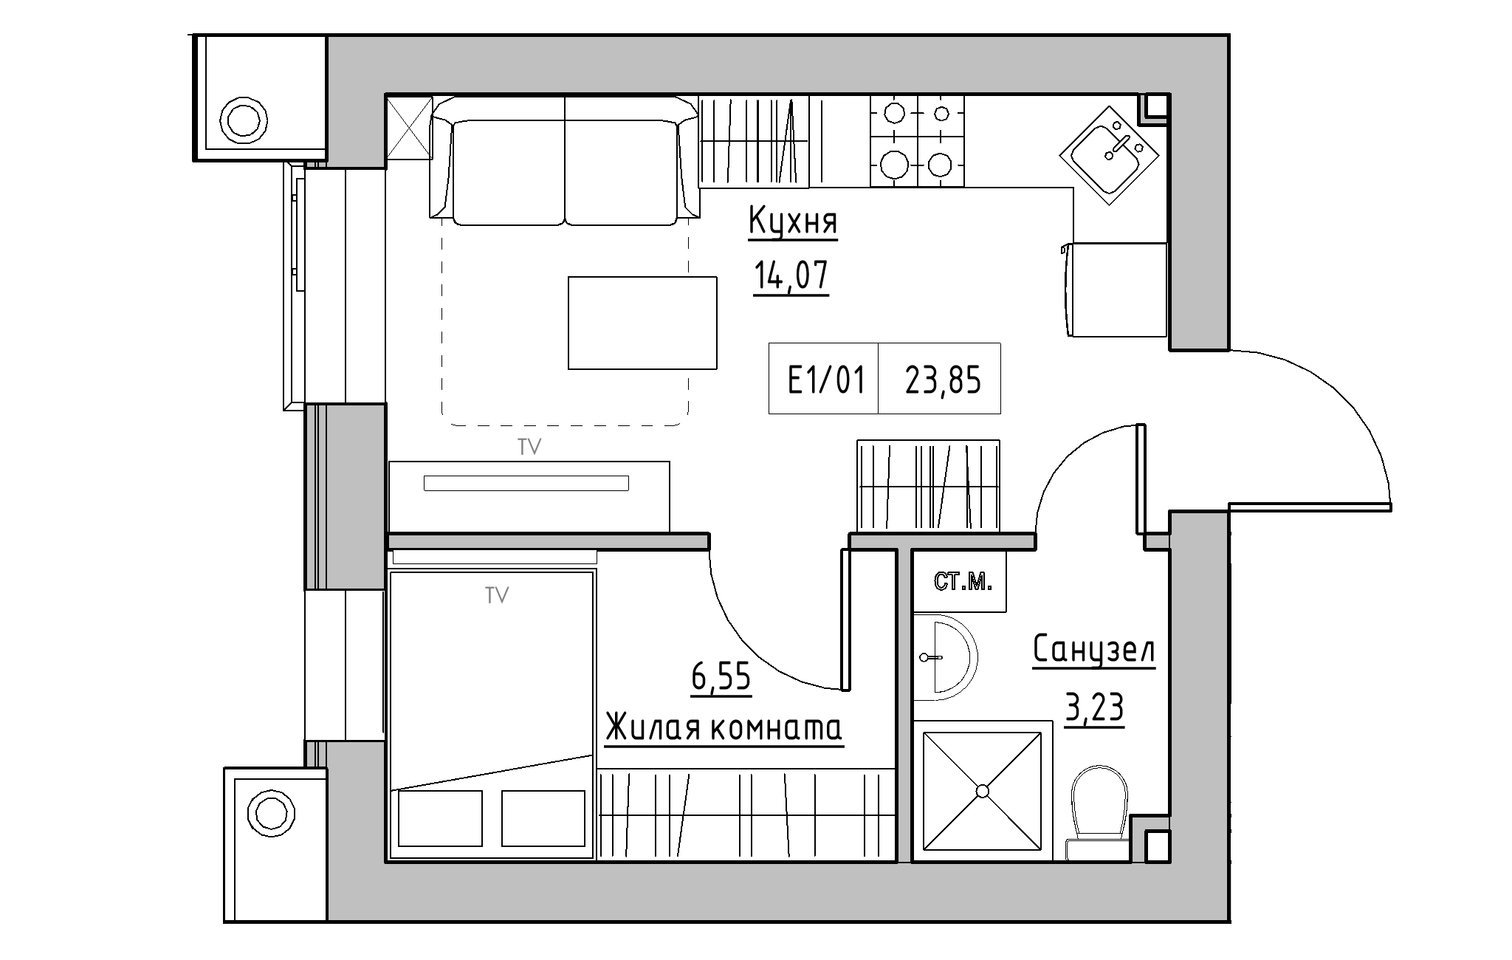 Планування 1-к квартира площею 23.85м2, KS-013-05/0003.